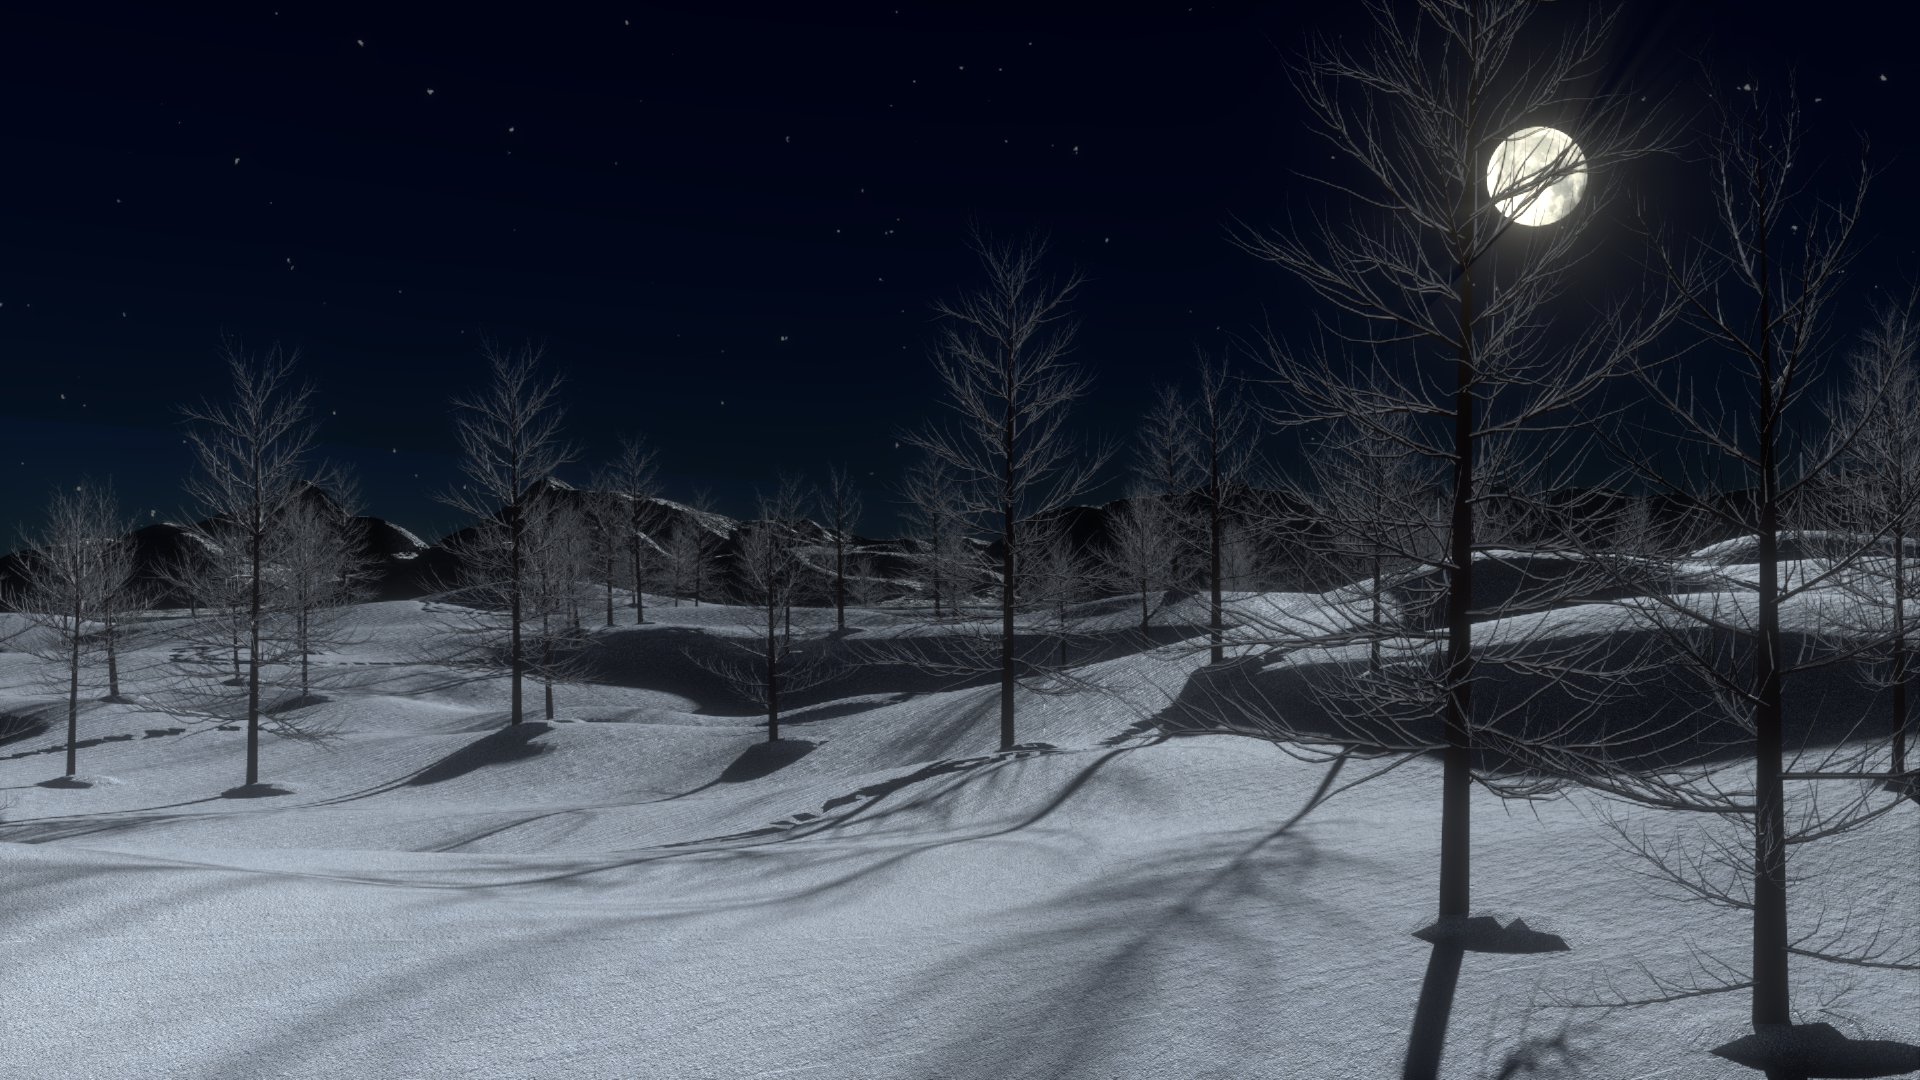 Скачать обои бесплатно Зима, Ночь, Луна, Снег, Дерево, Вечер, Земля/природа картинка на рабочий стол ПК